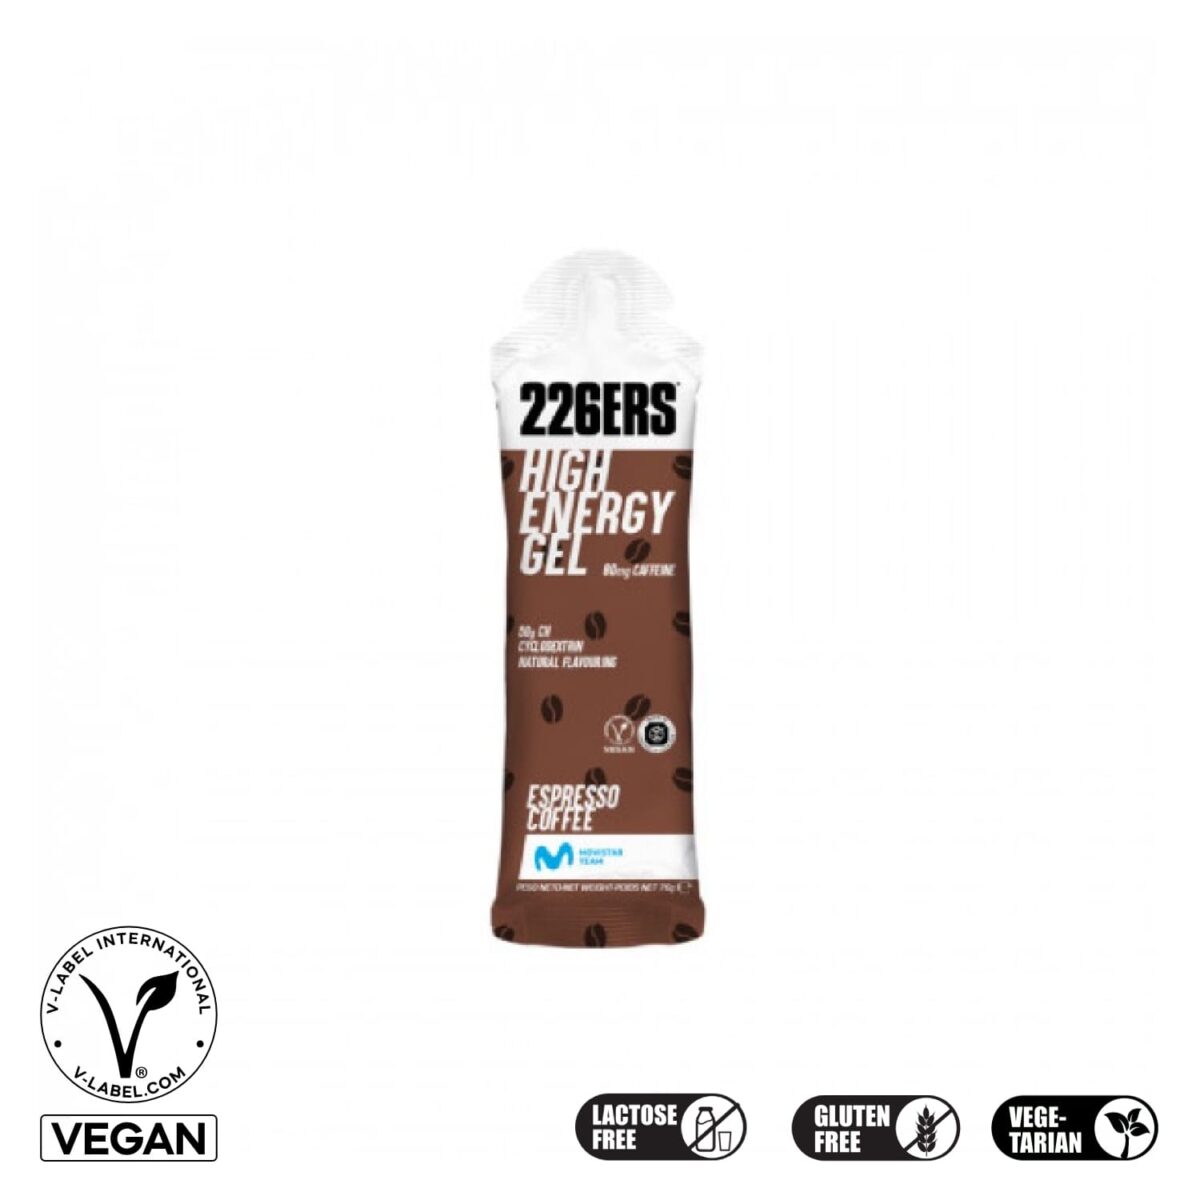 226ERS HighEnergy Gel Espresso Coffee Caffeine 80mg